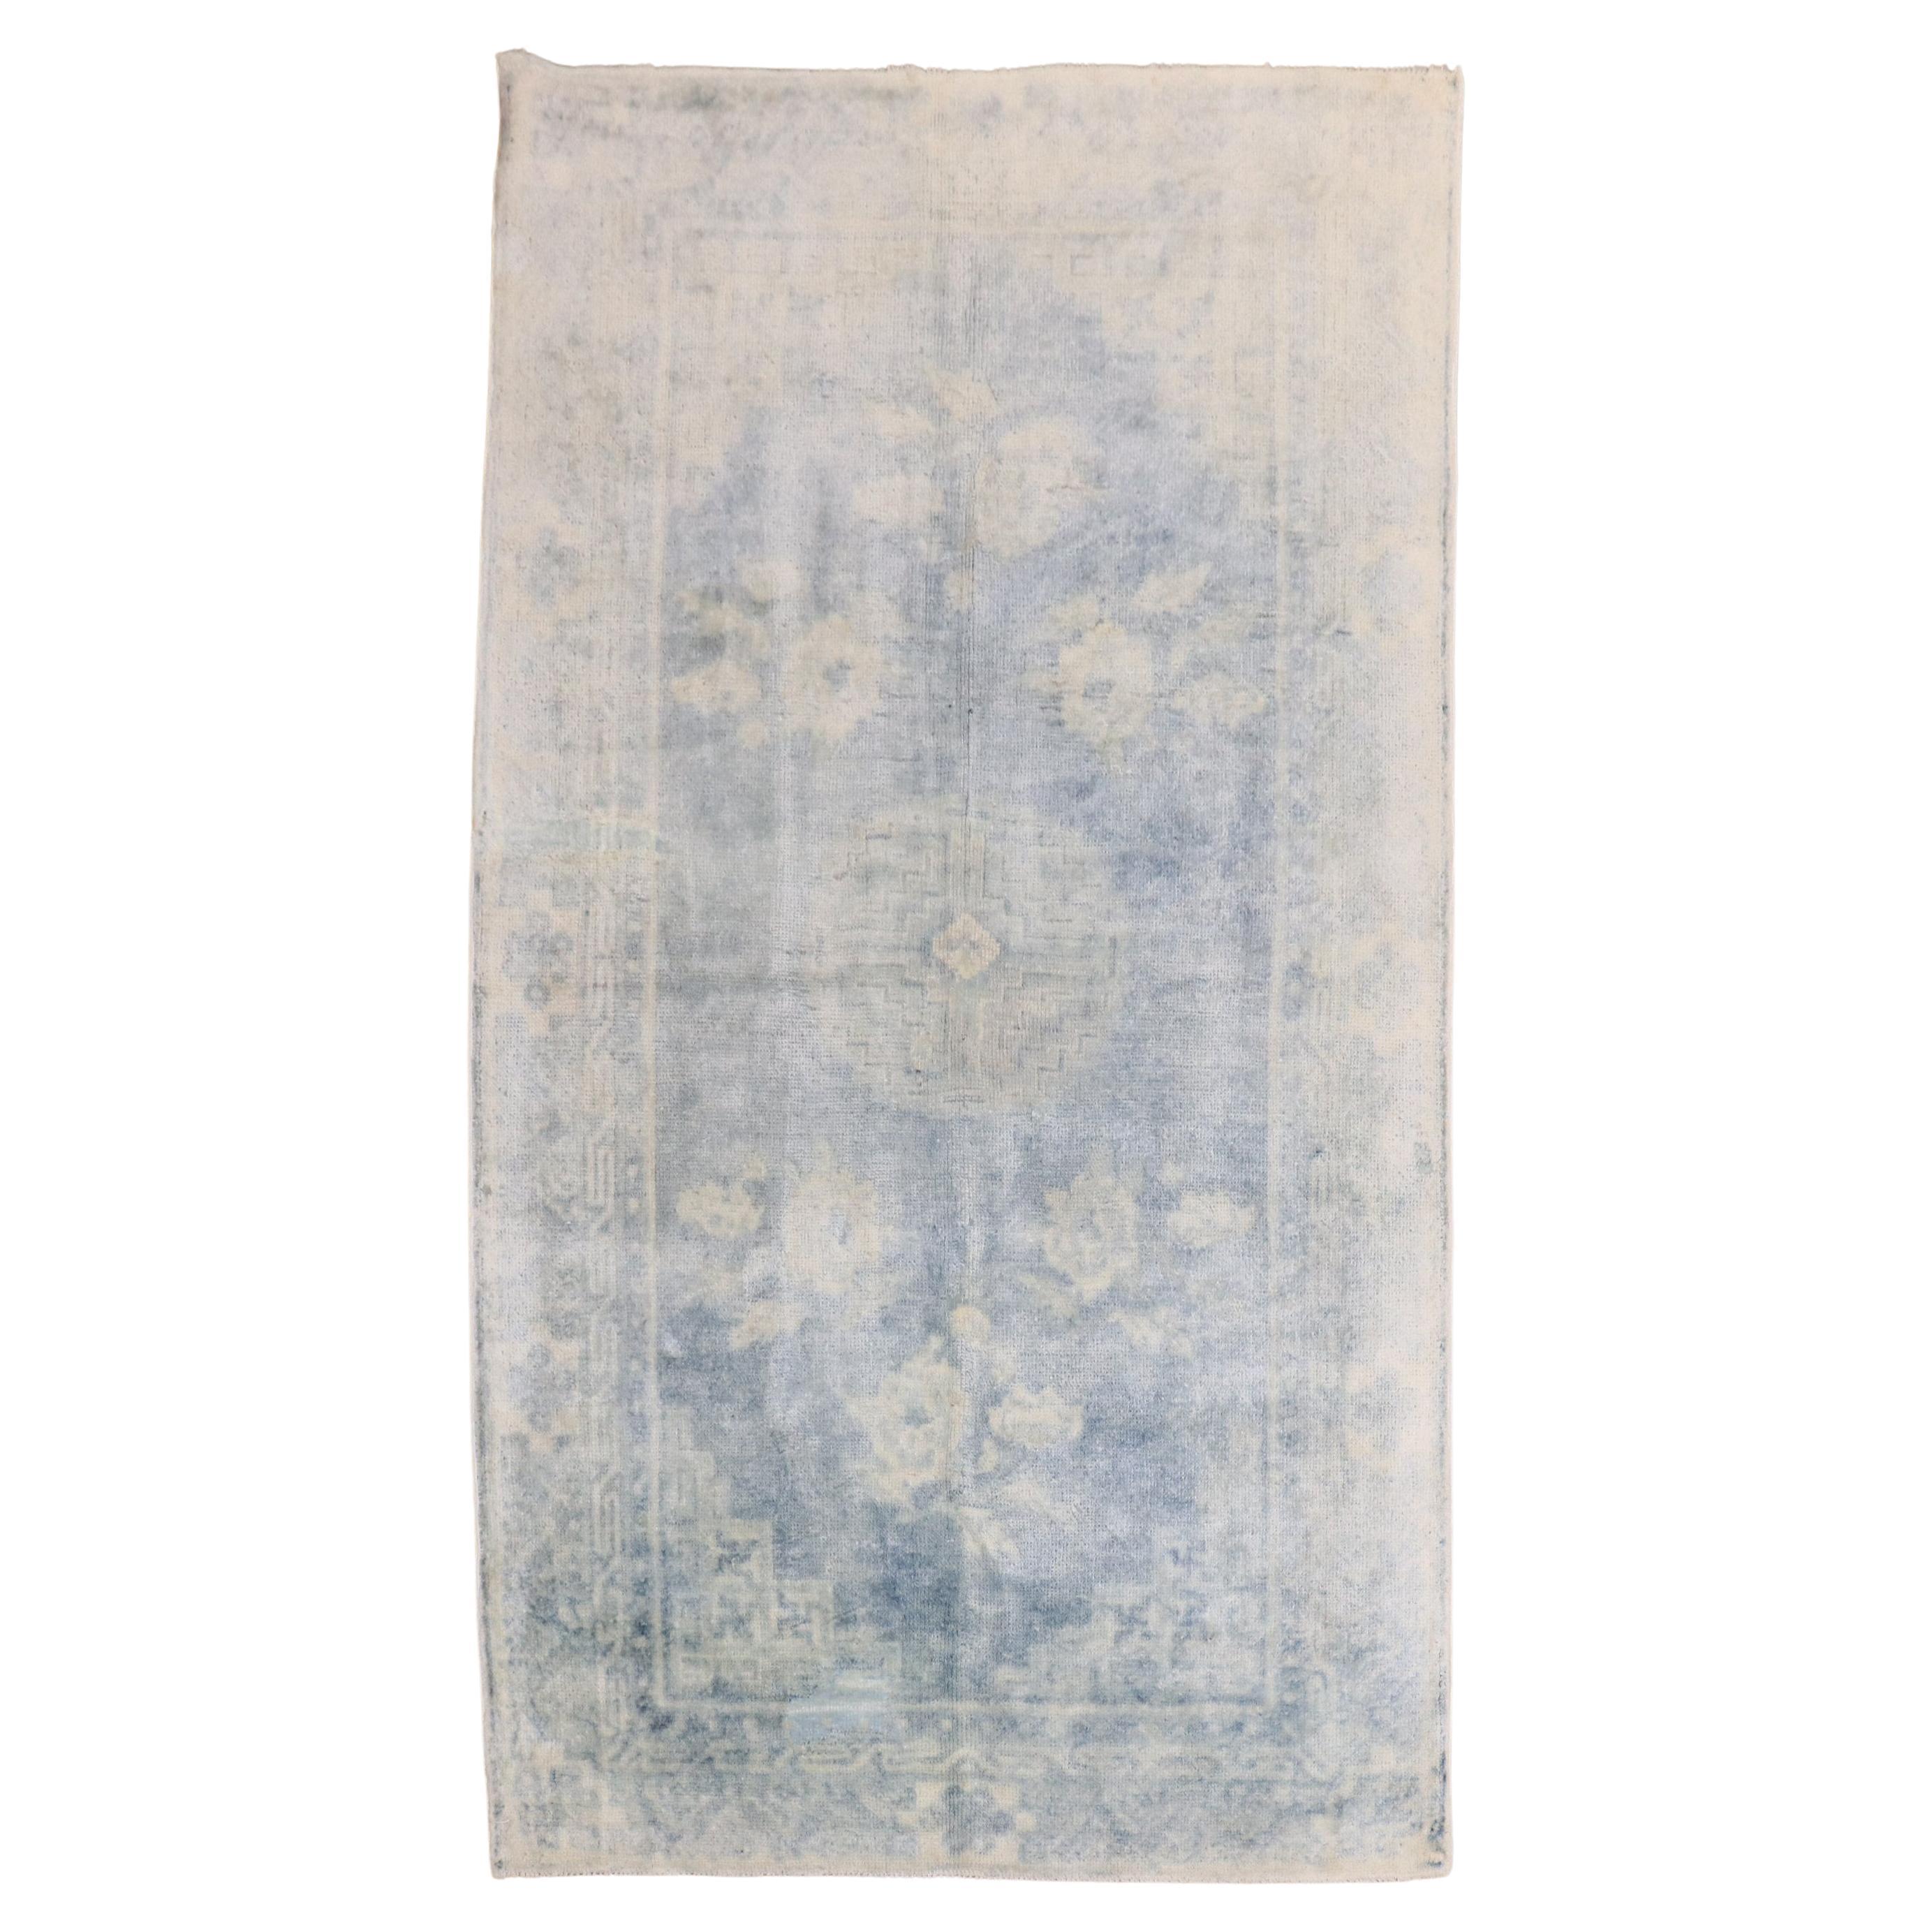 Zabihi Kollektion Blassblauer chinesischer Teppich des frühen 20. Jahrhunderts